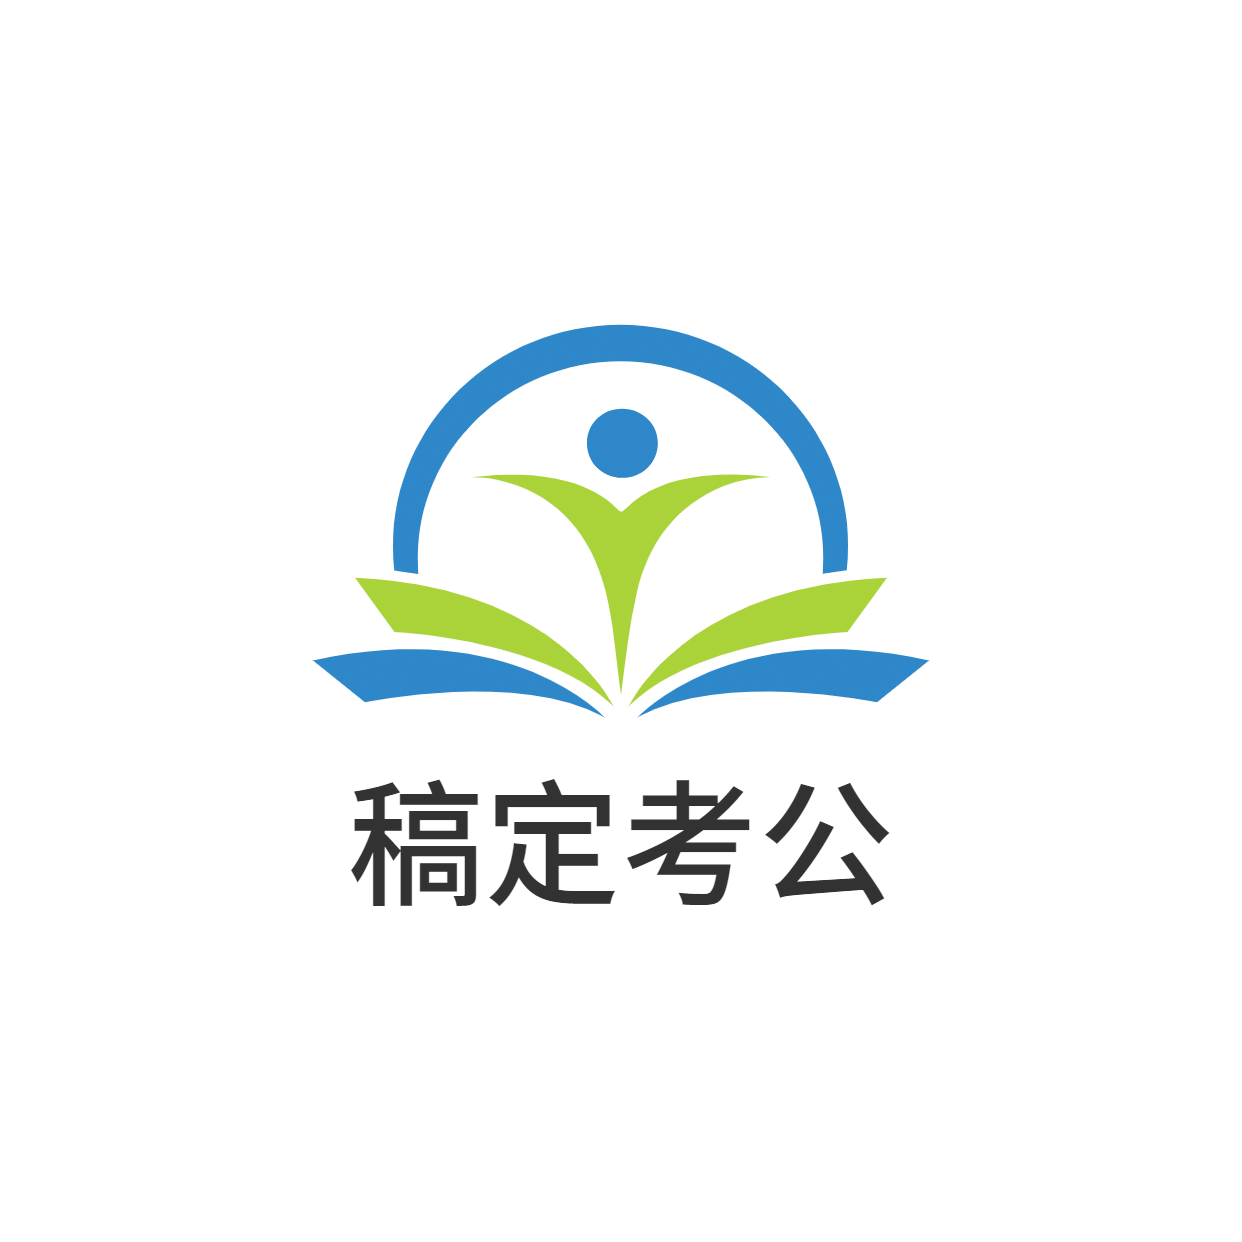 教育考公图形中国风logo预览效果